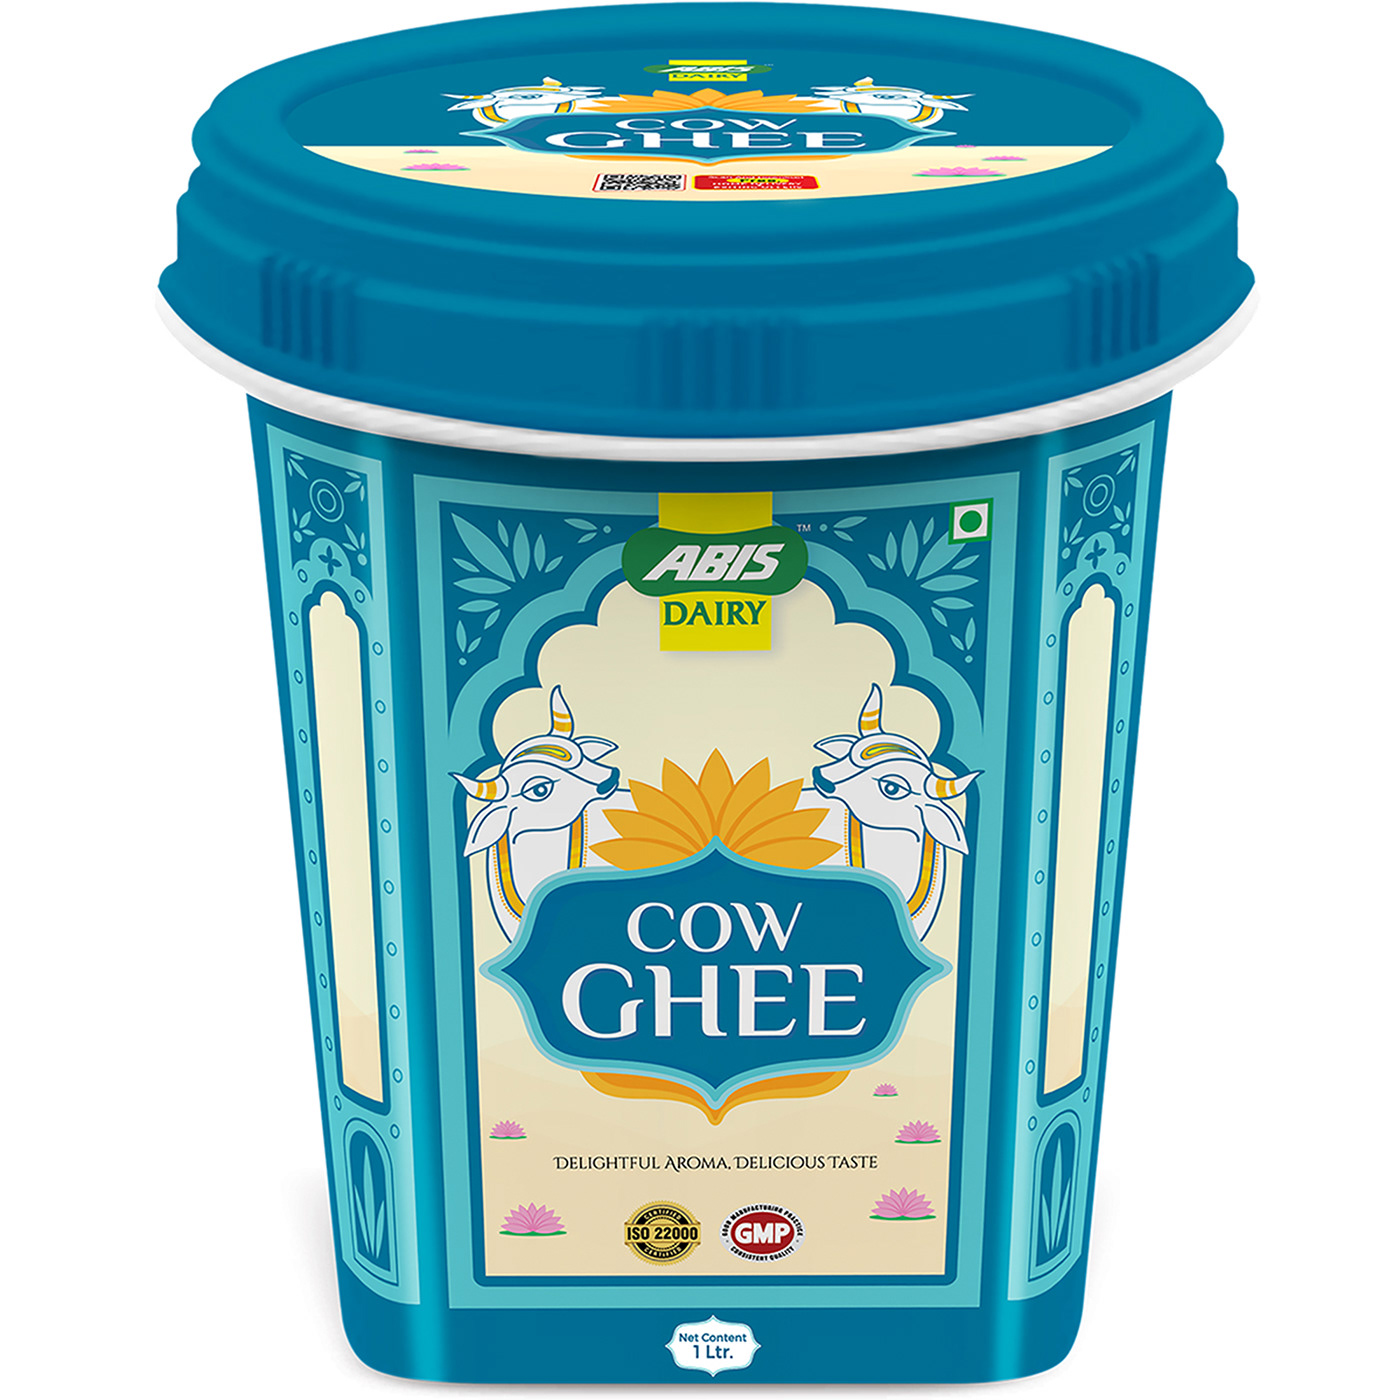 Cow Ghee cow ghee price cow ghee price 1kg pure cow ghee